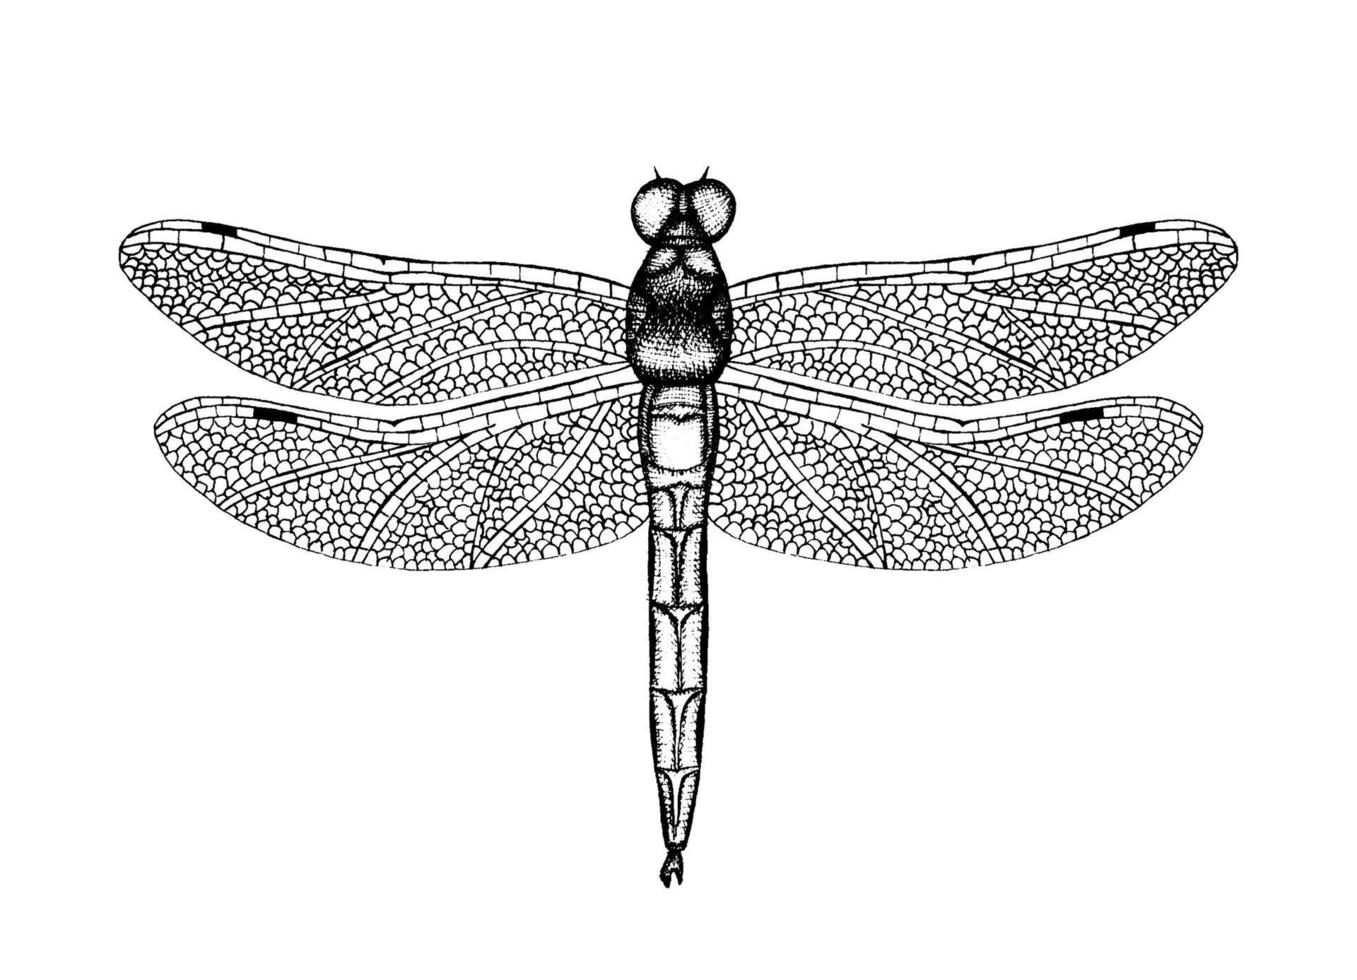 svart och vit vektorillustration av en trollslända. handritad insektsskiss. detaljerad grafisk ritning av damselfly i vintage stil. vektor